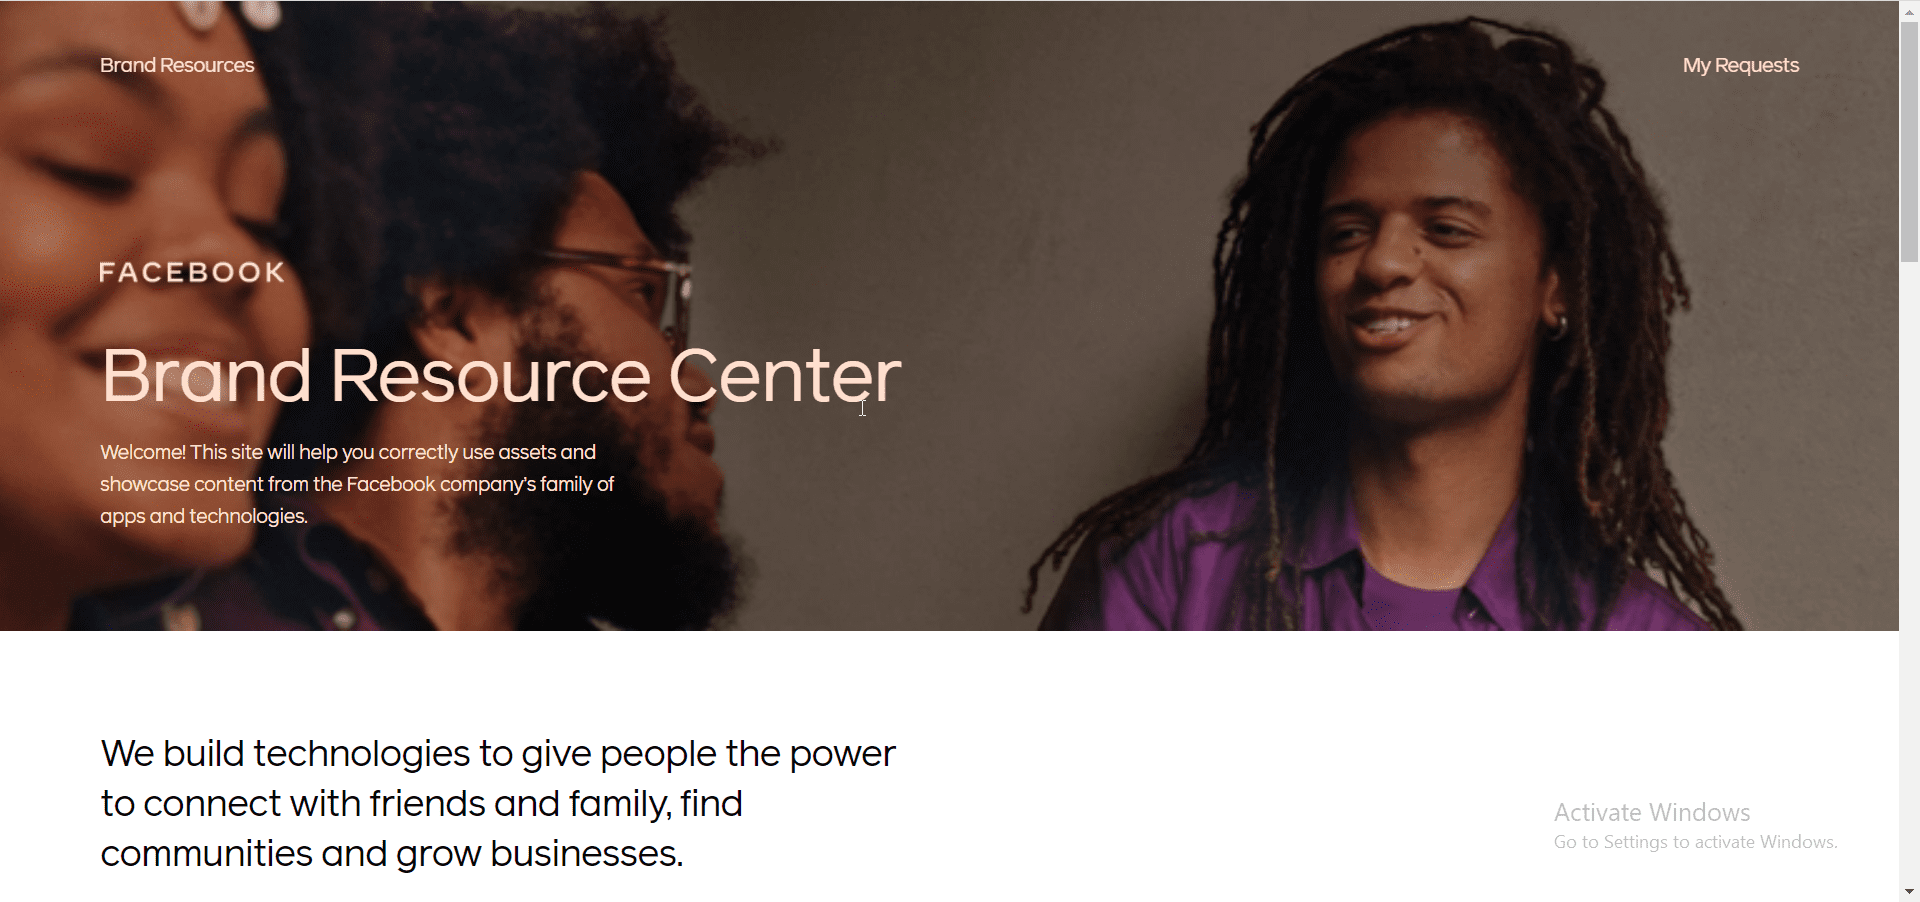 Facebook Brand Resource Center